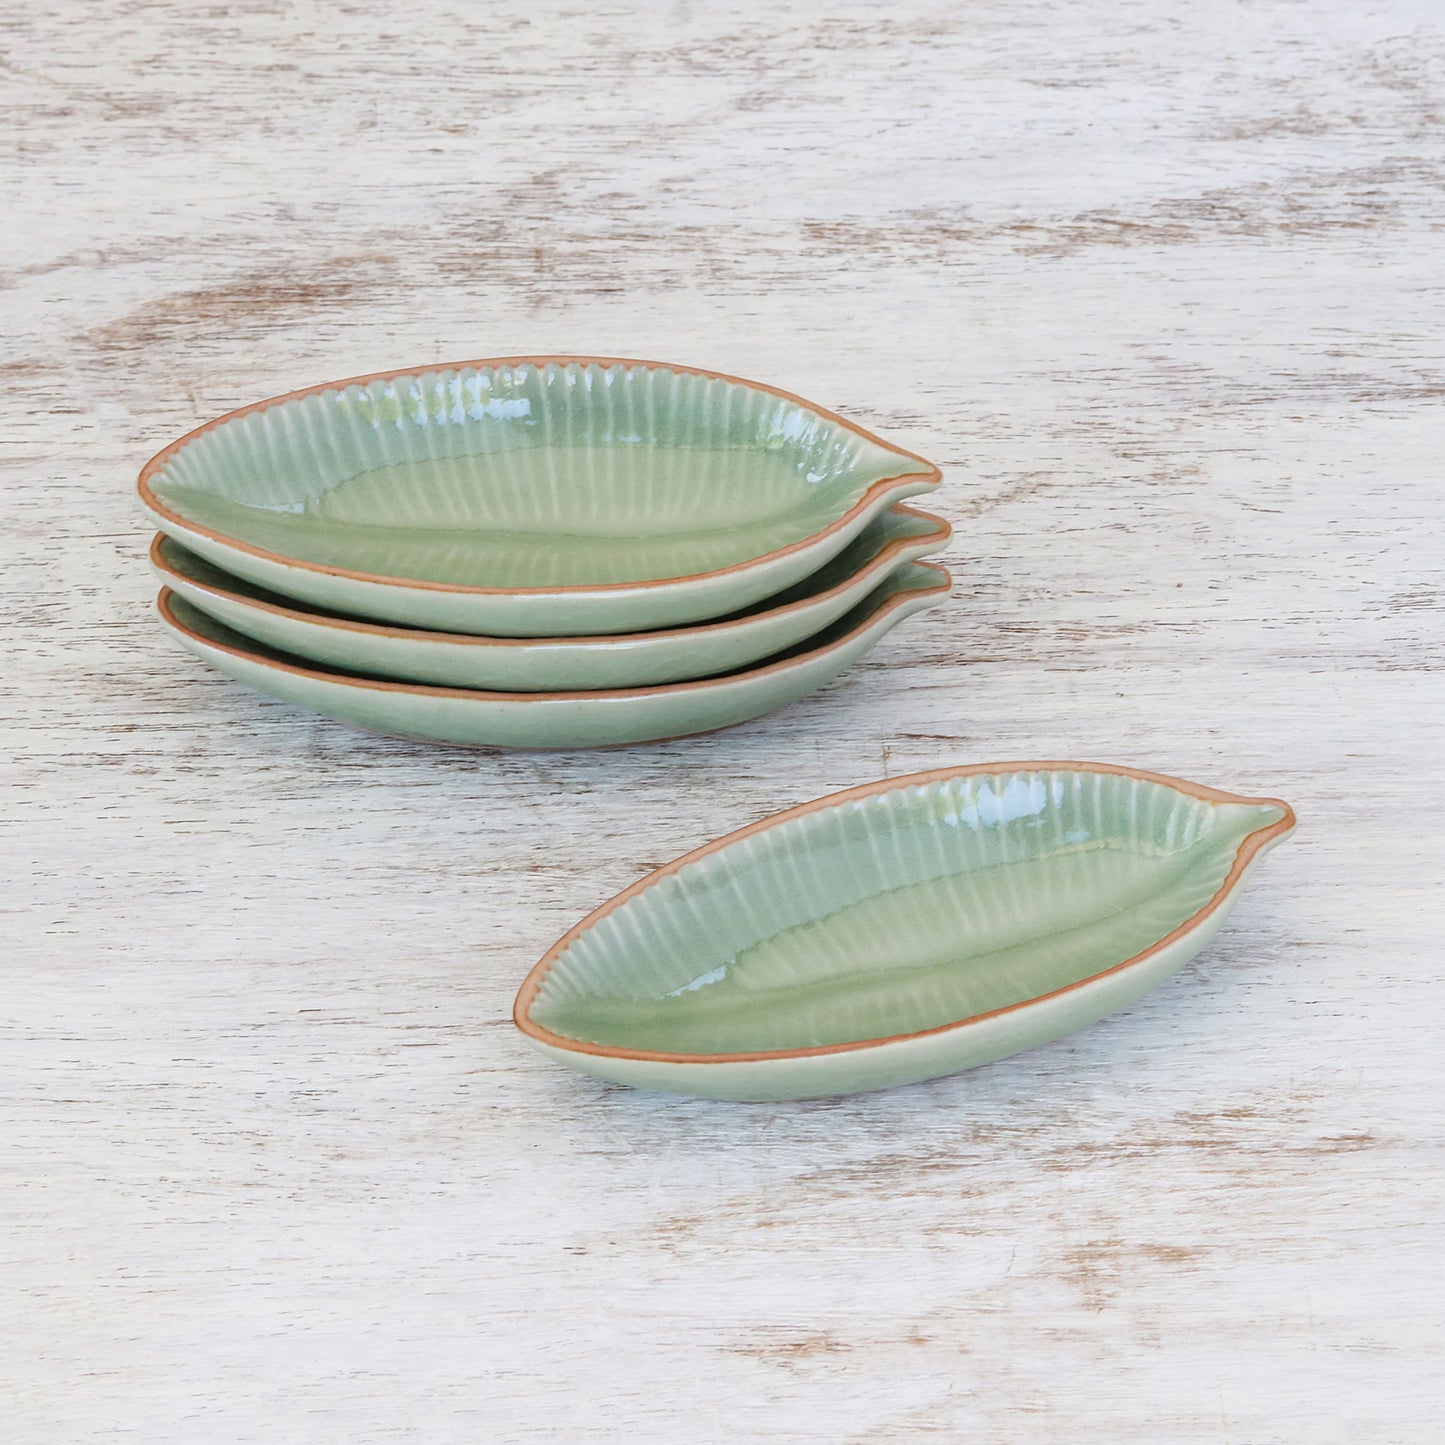 Festive Banana Leaf-Shaped Celadon Ceramic Appetizer Bowls (Set of 4)